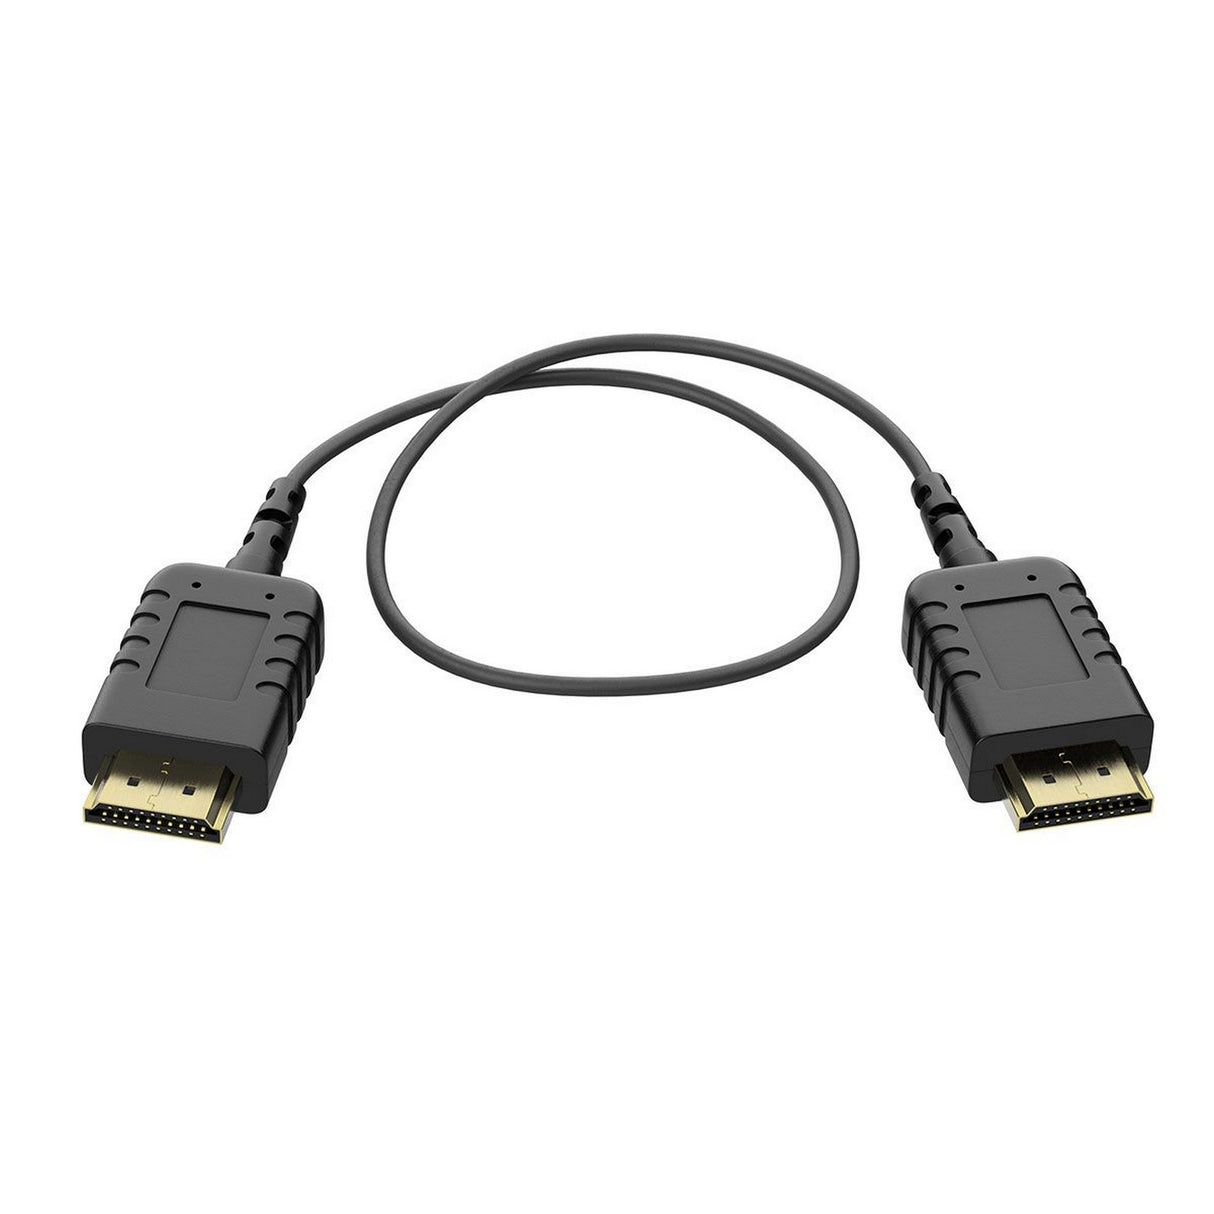 8Sinn 8-EXTRATHIN-HDMI-HDMI-40CM HDMI Cable, 4-Centimeters